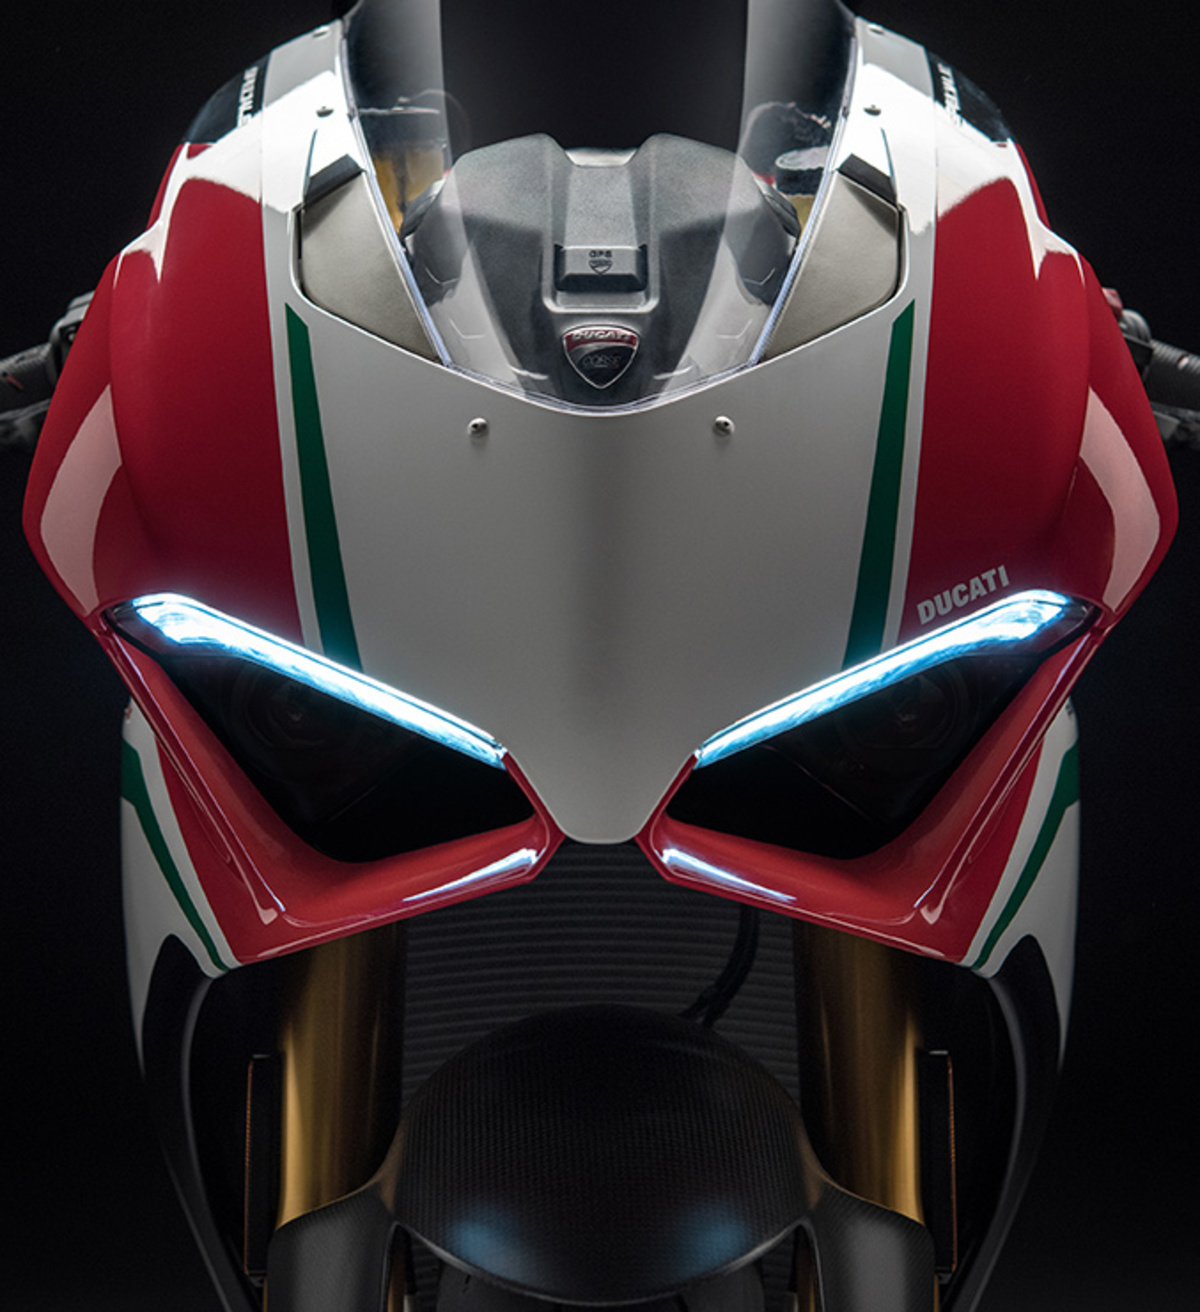 V4 2020 "V789" Adesivi per alette aerodinamiche moto Ducati Panigale V4R